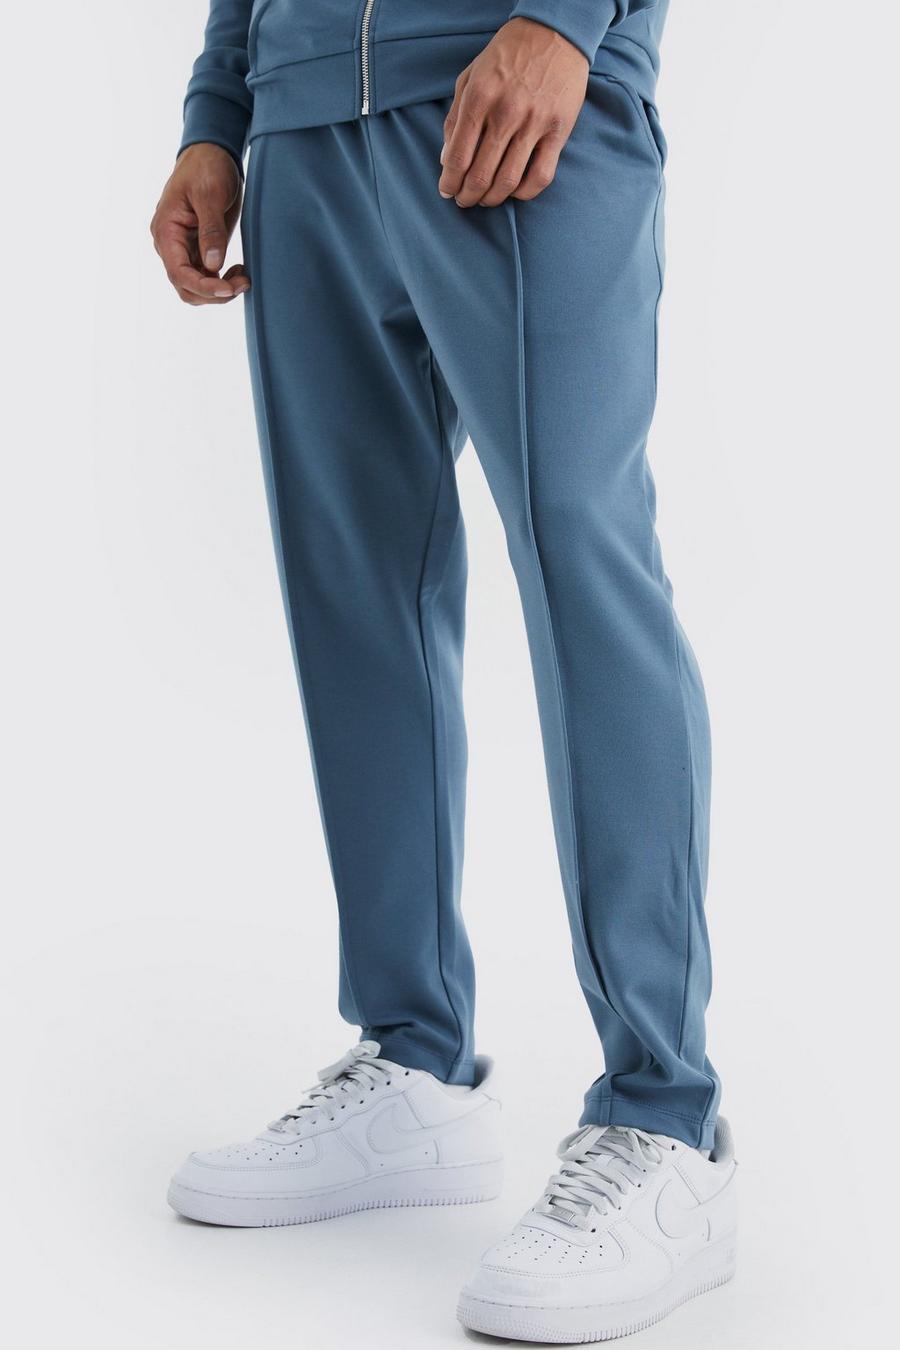 Pantalón deportivo ajustado ajustado con cintura elástica y alforza, Slate blue